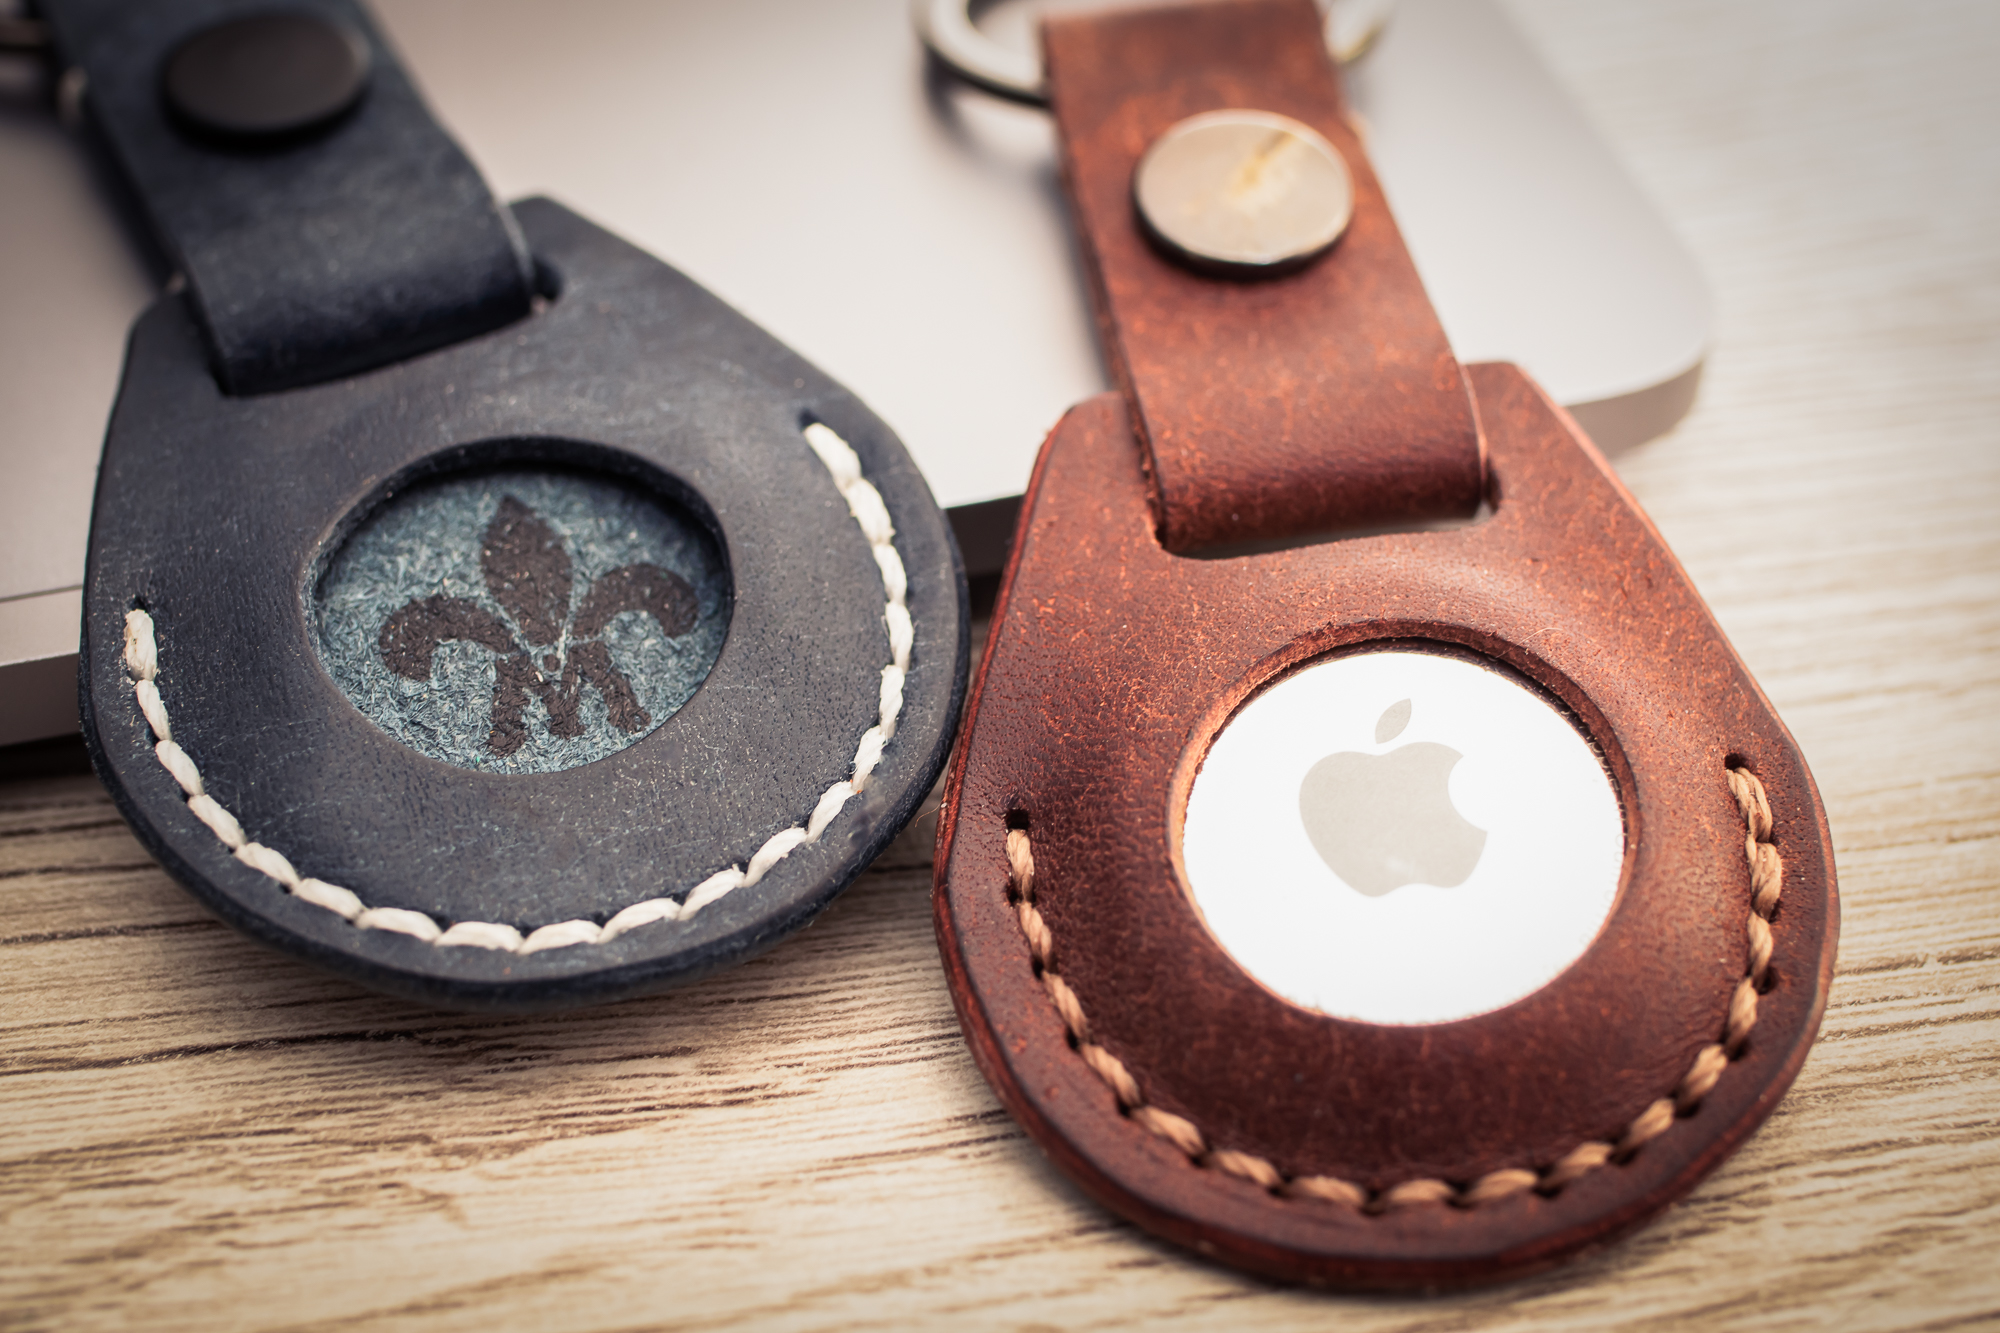 Pour Apple Airtags étui porte clés en cuir protection pour Airtag